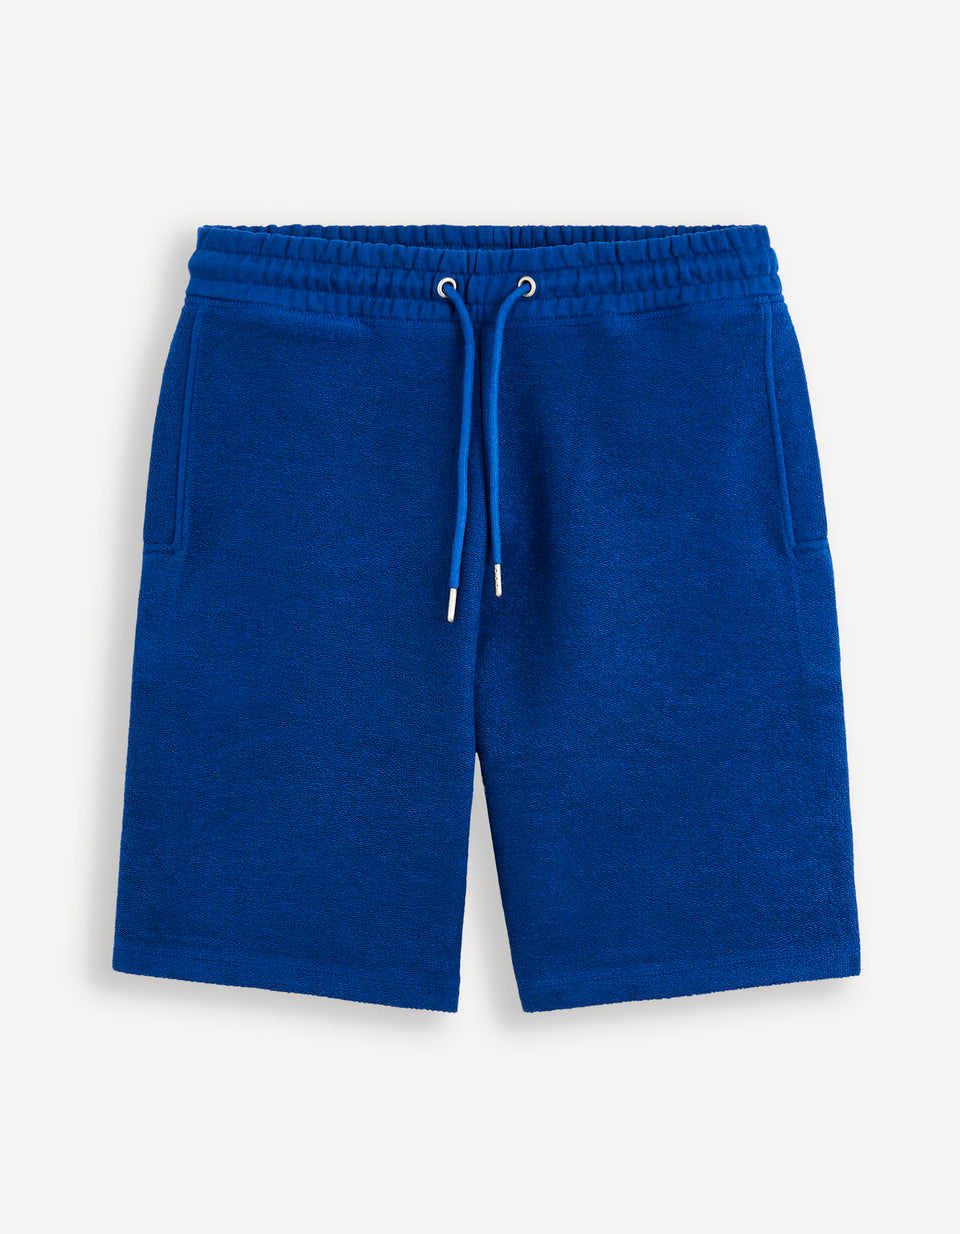 100% Cotton Shorts - Denim Blue - 05